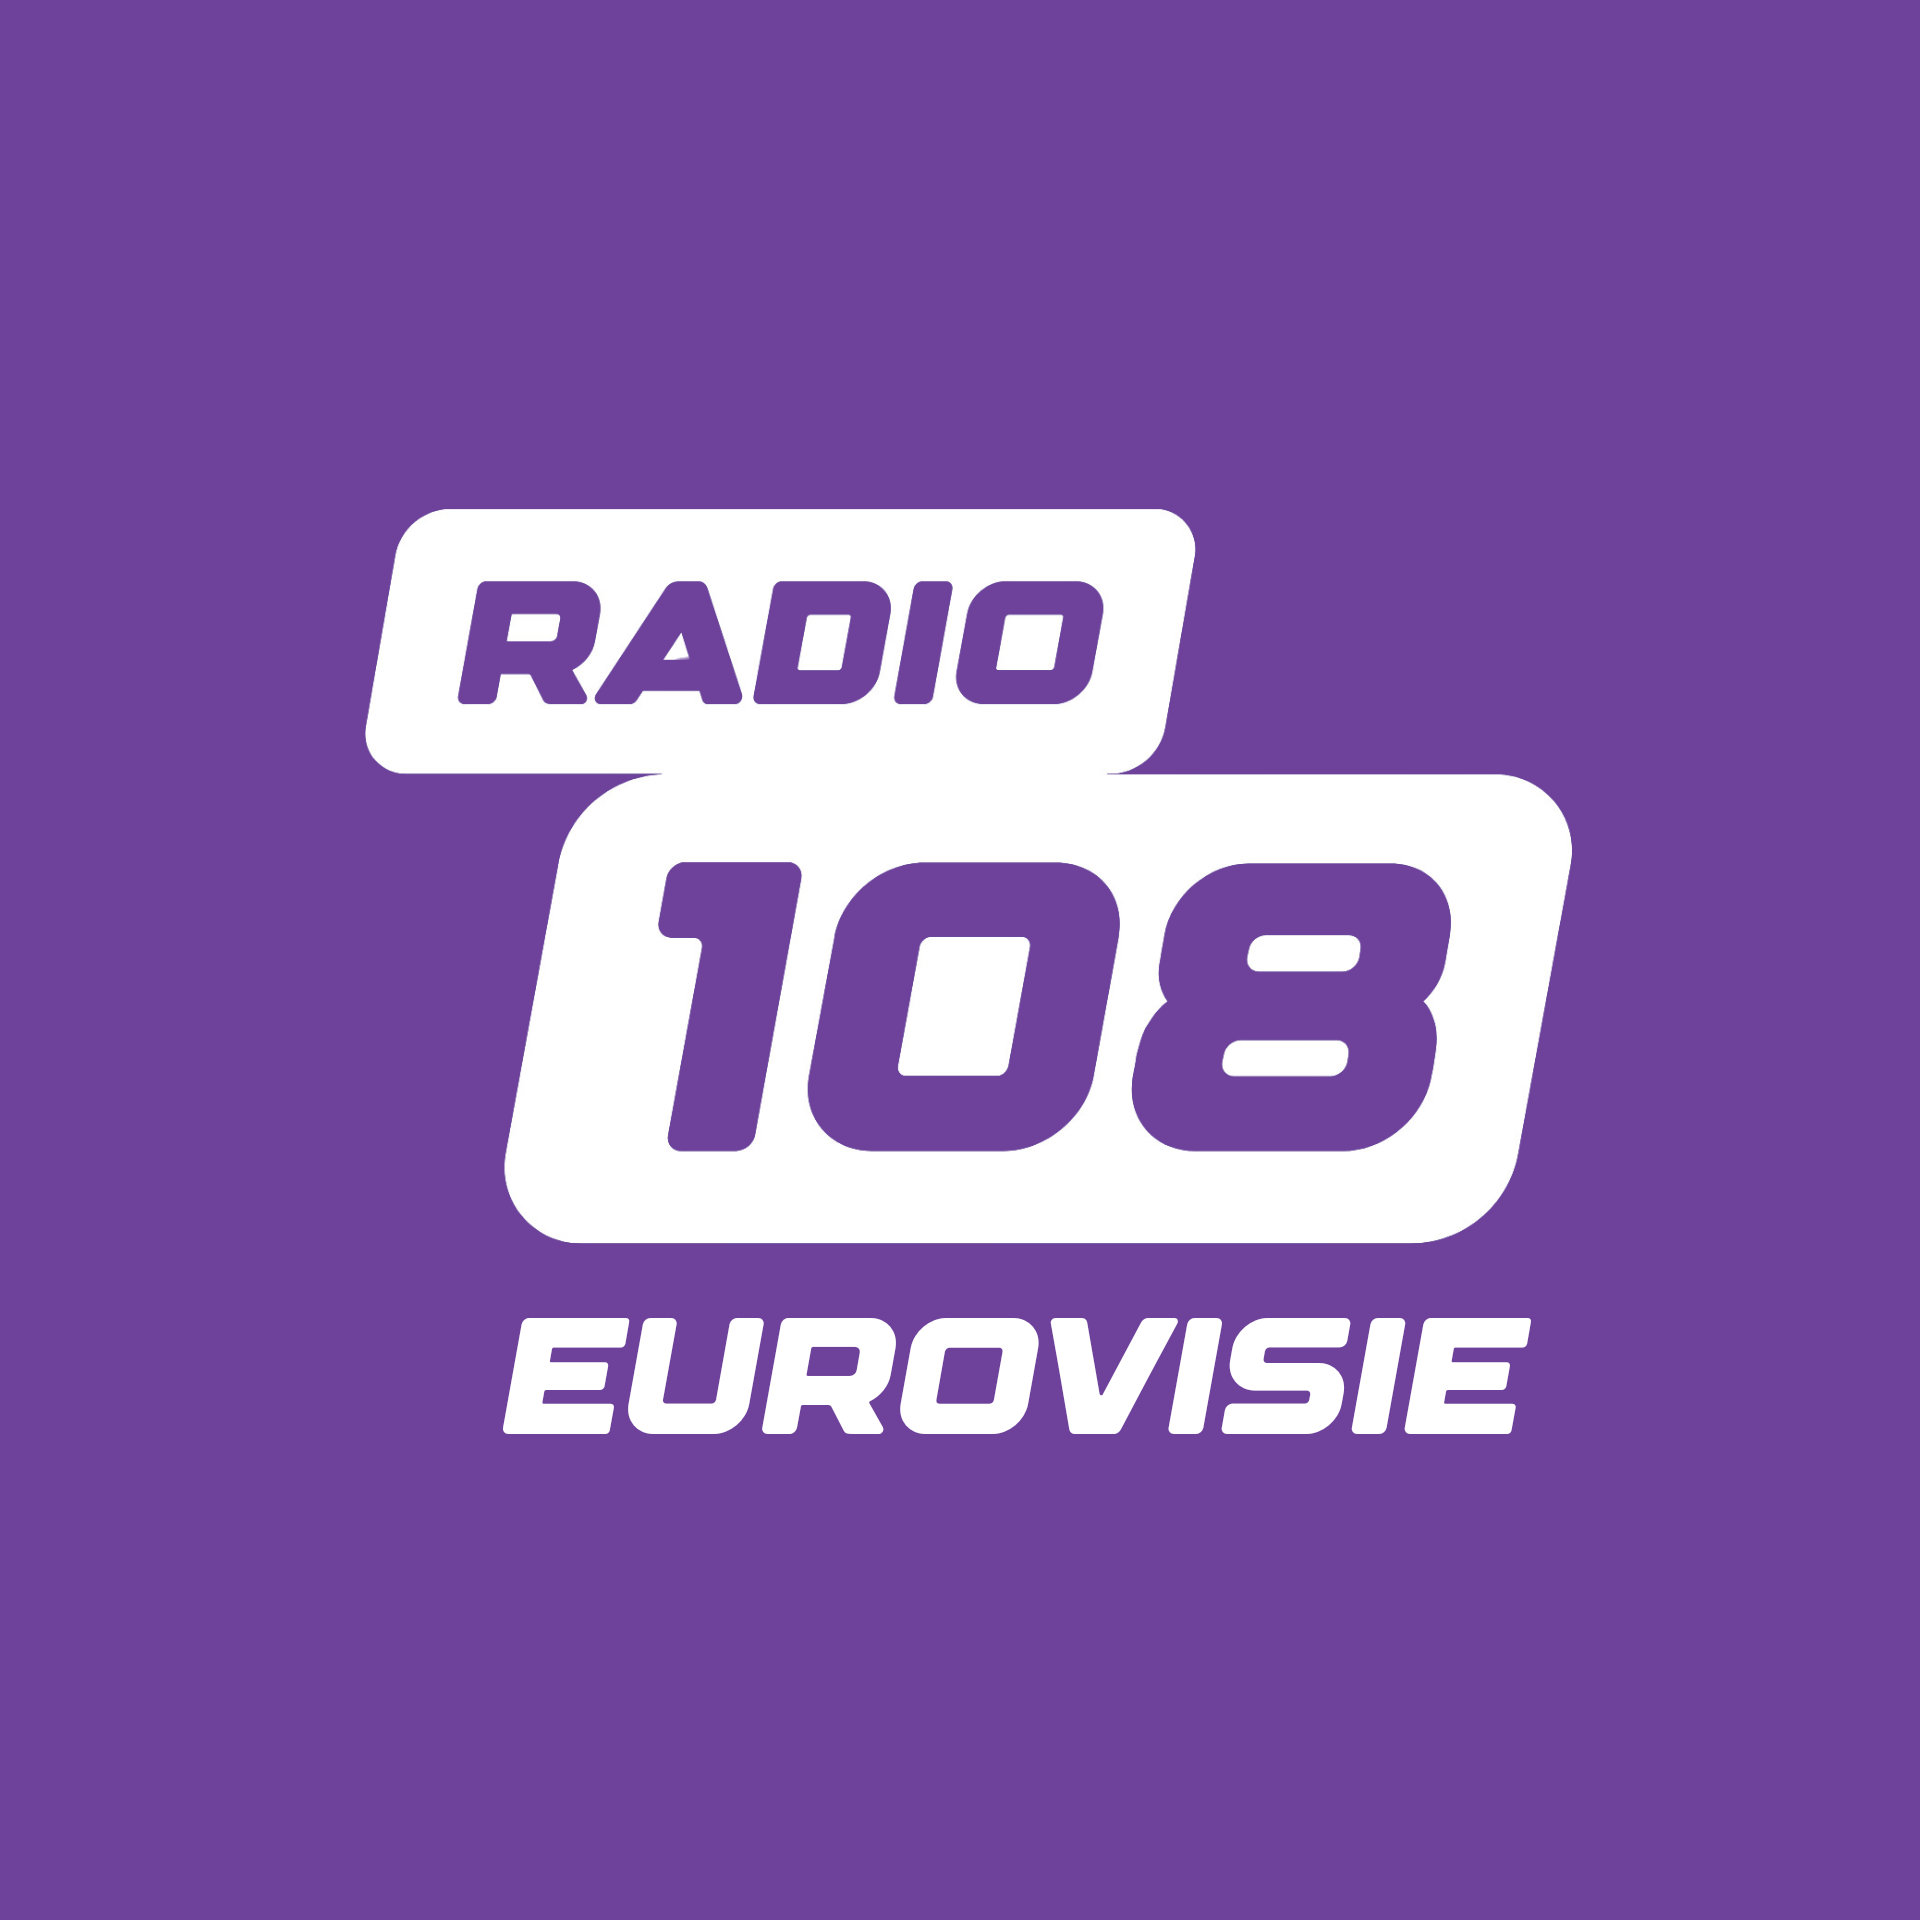 RADIO 108 - EUROVISIE